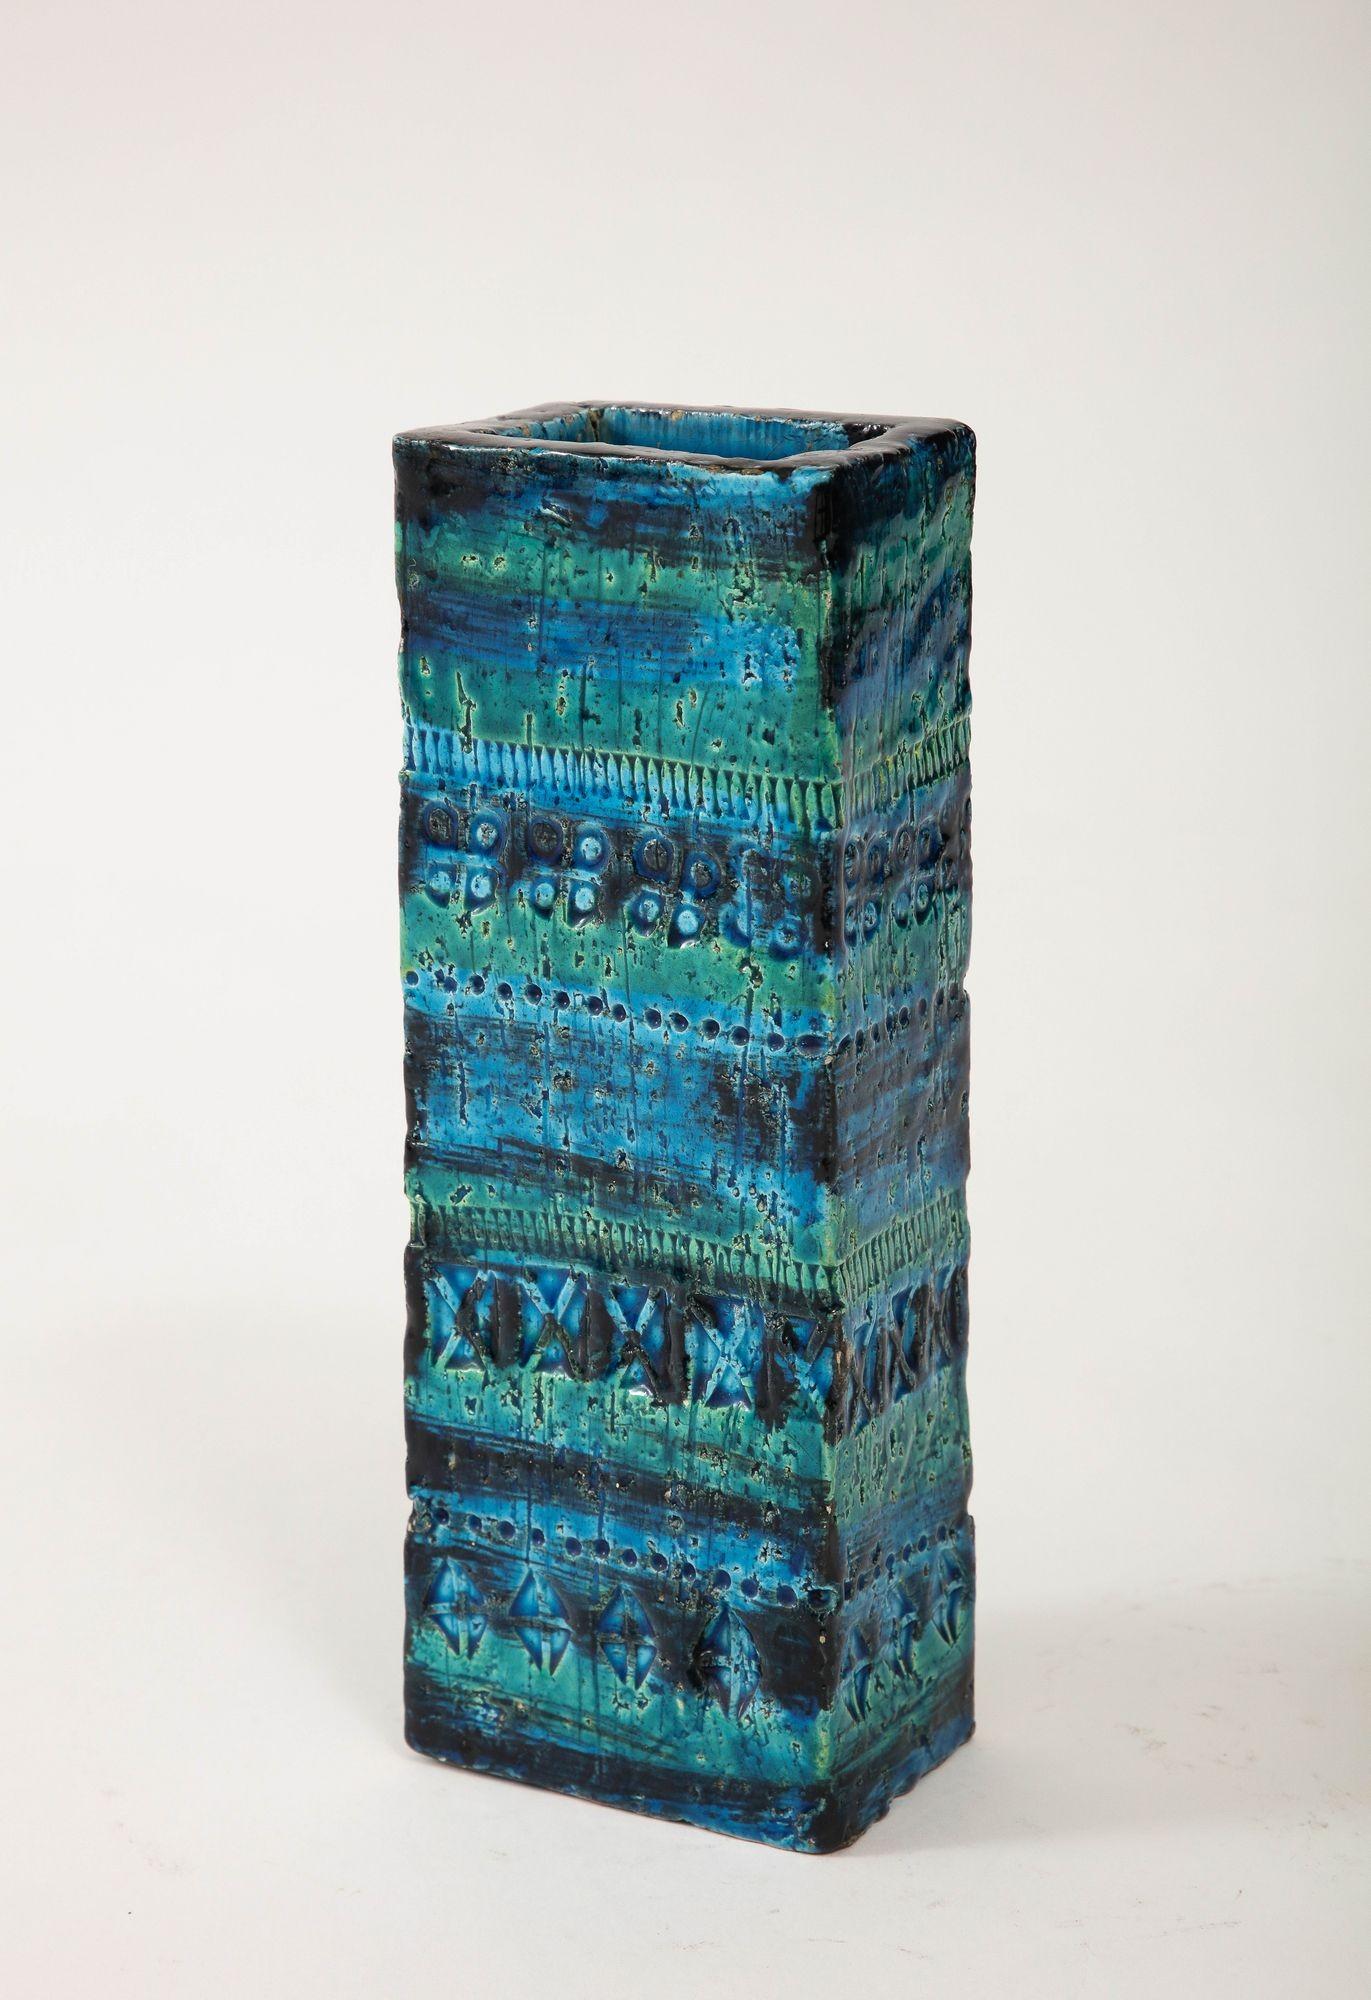 Mid-20th Century Ceramic Rectangular Vase by Aldo Londi for Bitossi 'Rimini blue' Italy c. 1960 For Sale